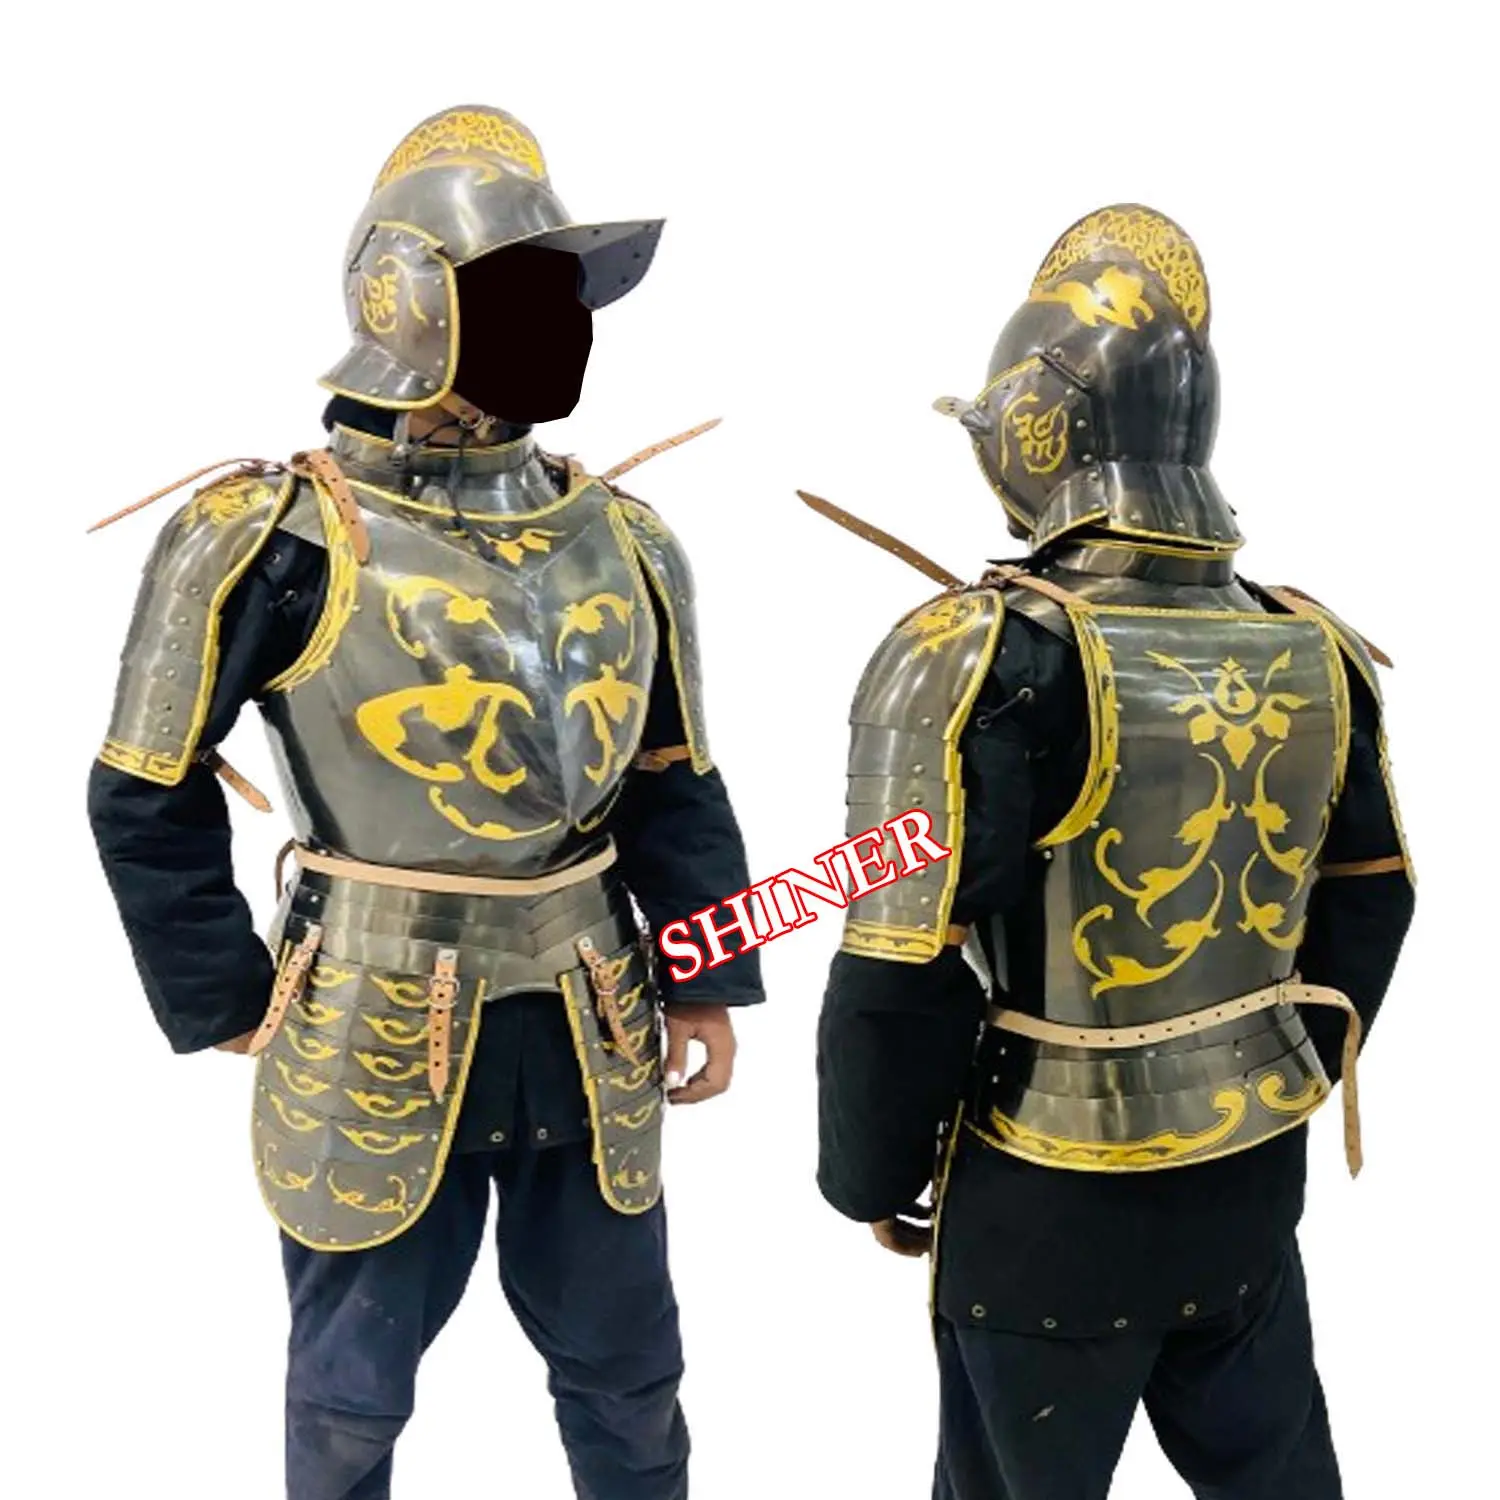 חליפת שריון חצי קרב בסגנון אירופאי מימי הביניים חליפת שריון אביר קרב מימי הביניים תחפושת ליל כל הקדושים לוחם חליפת שריון